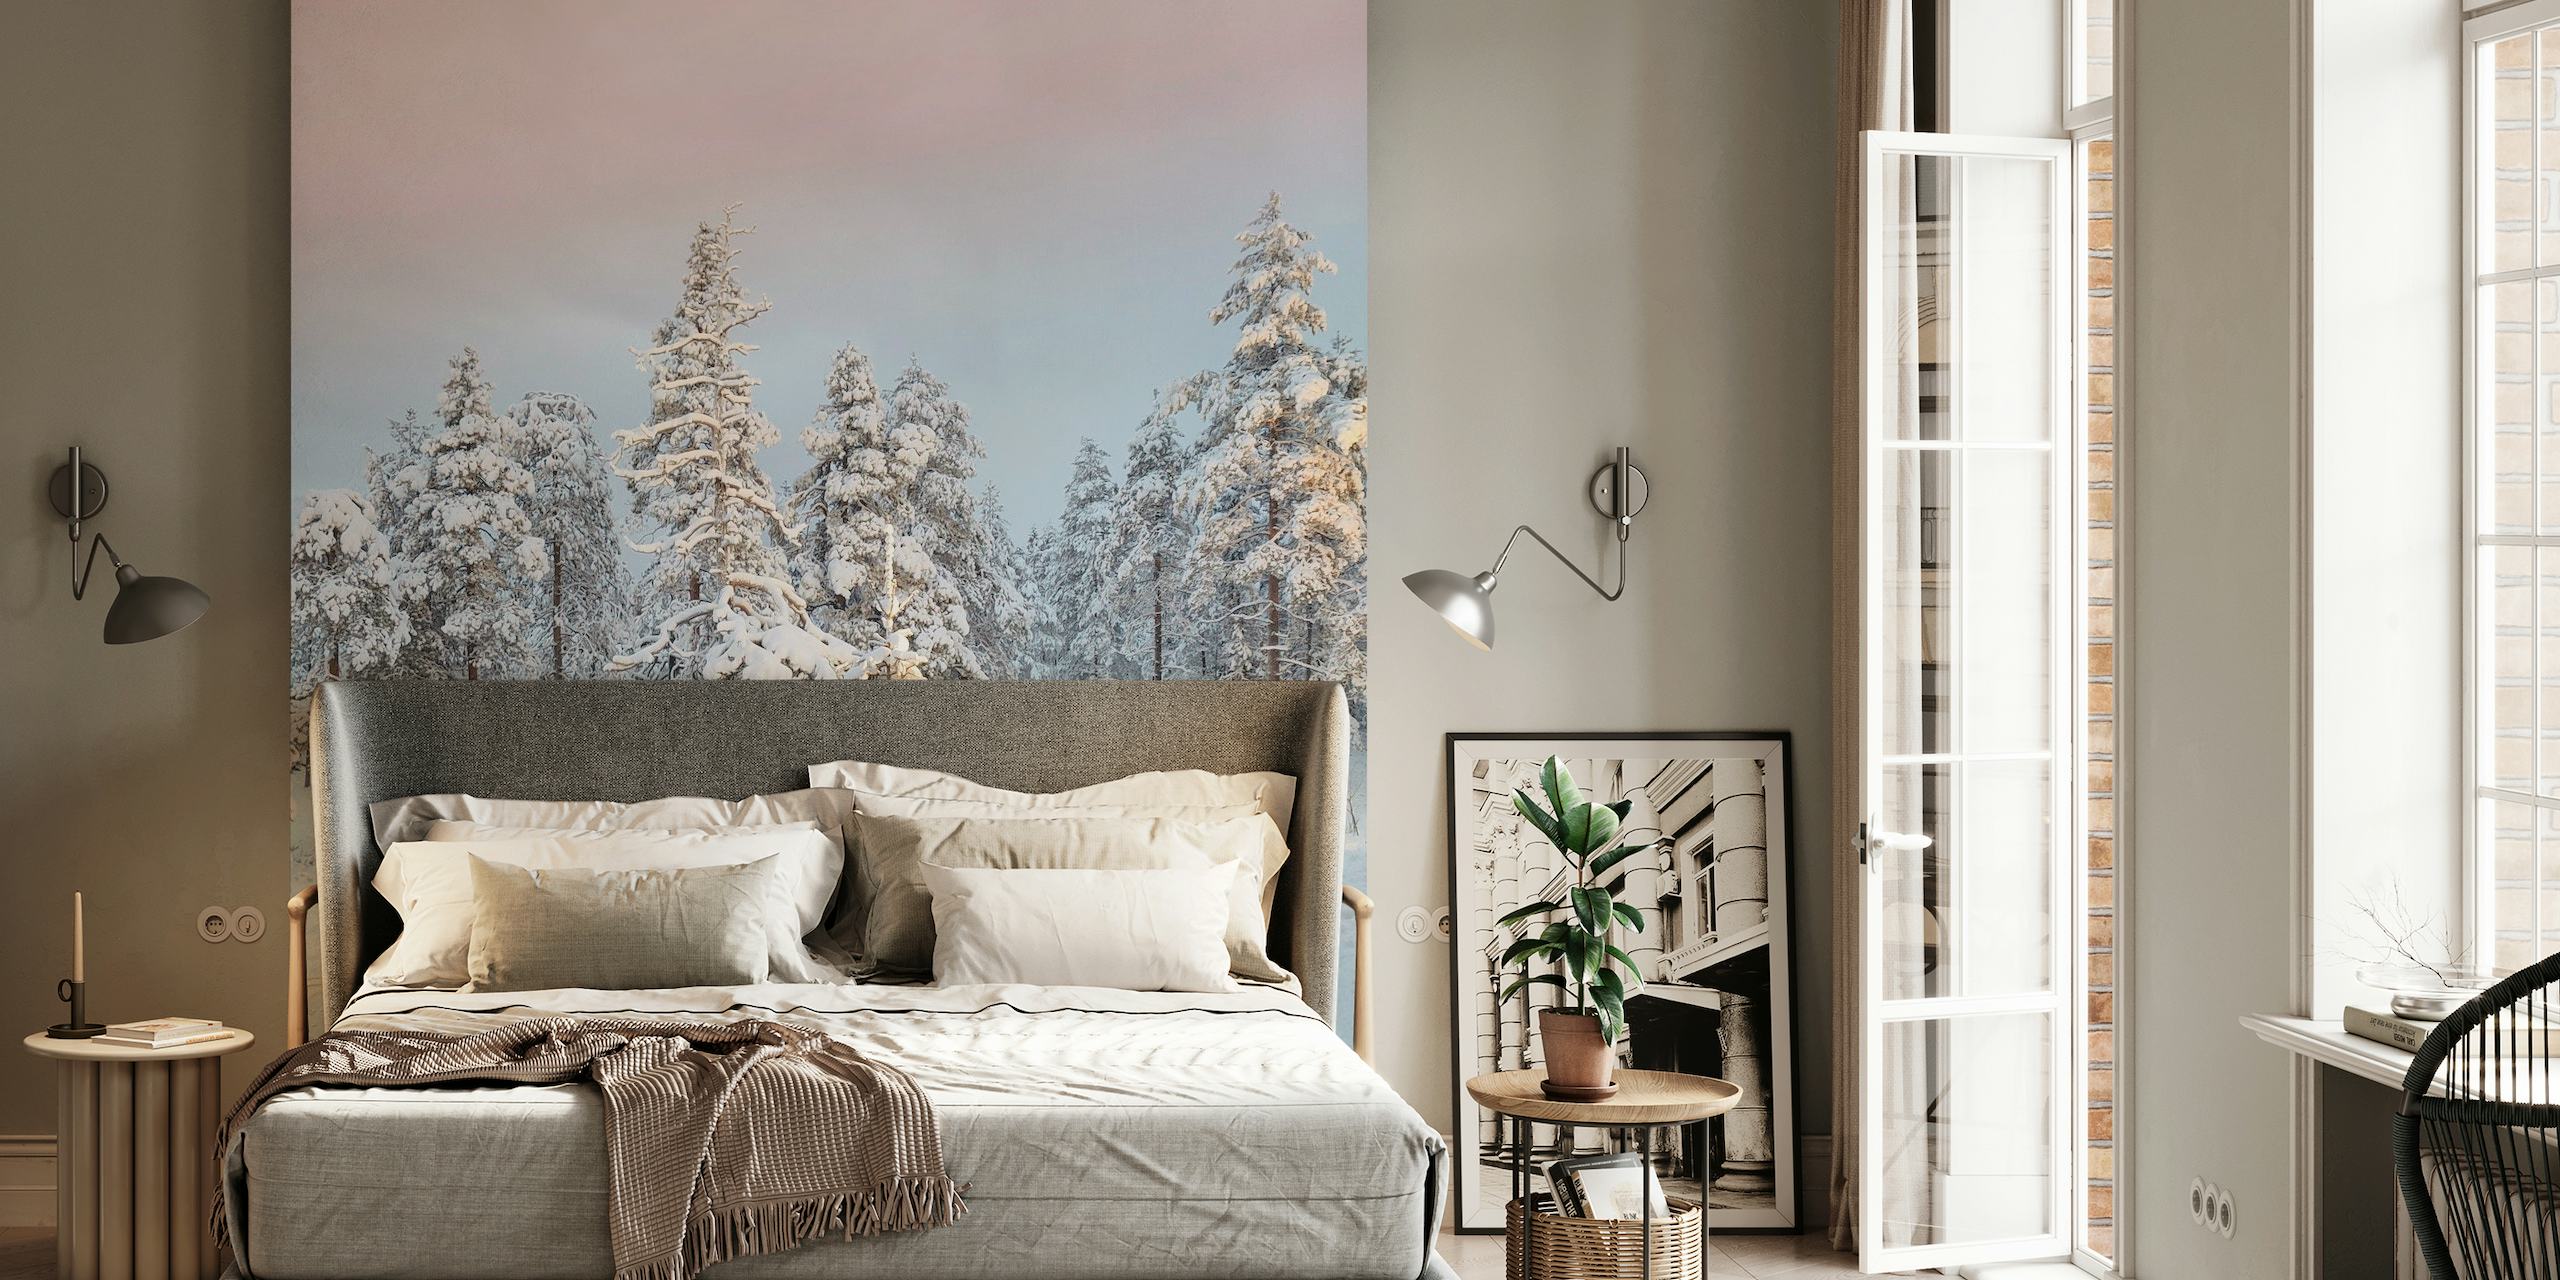 Snježni planinski krajolik sa zaleđenim drvećem naspram mirnog zidnog murala s nebom